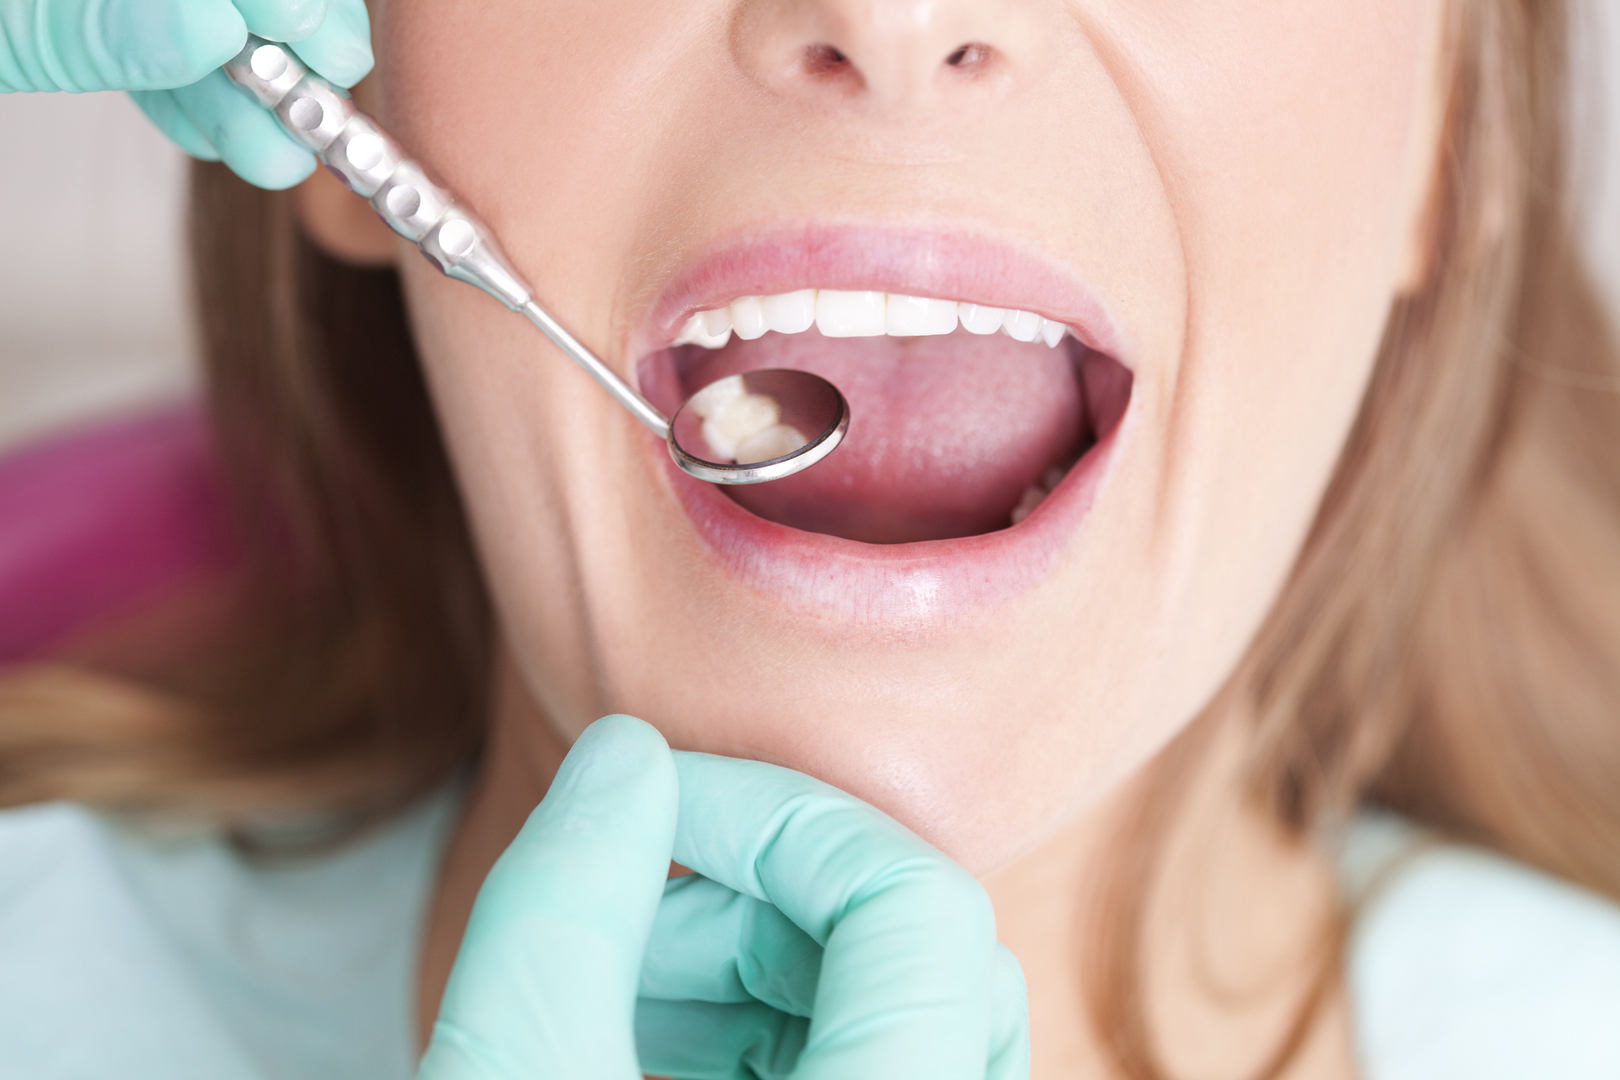 حالات تصيب الفم قد تكون تنبيها على حالة صحية أكثر خطورة